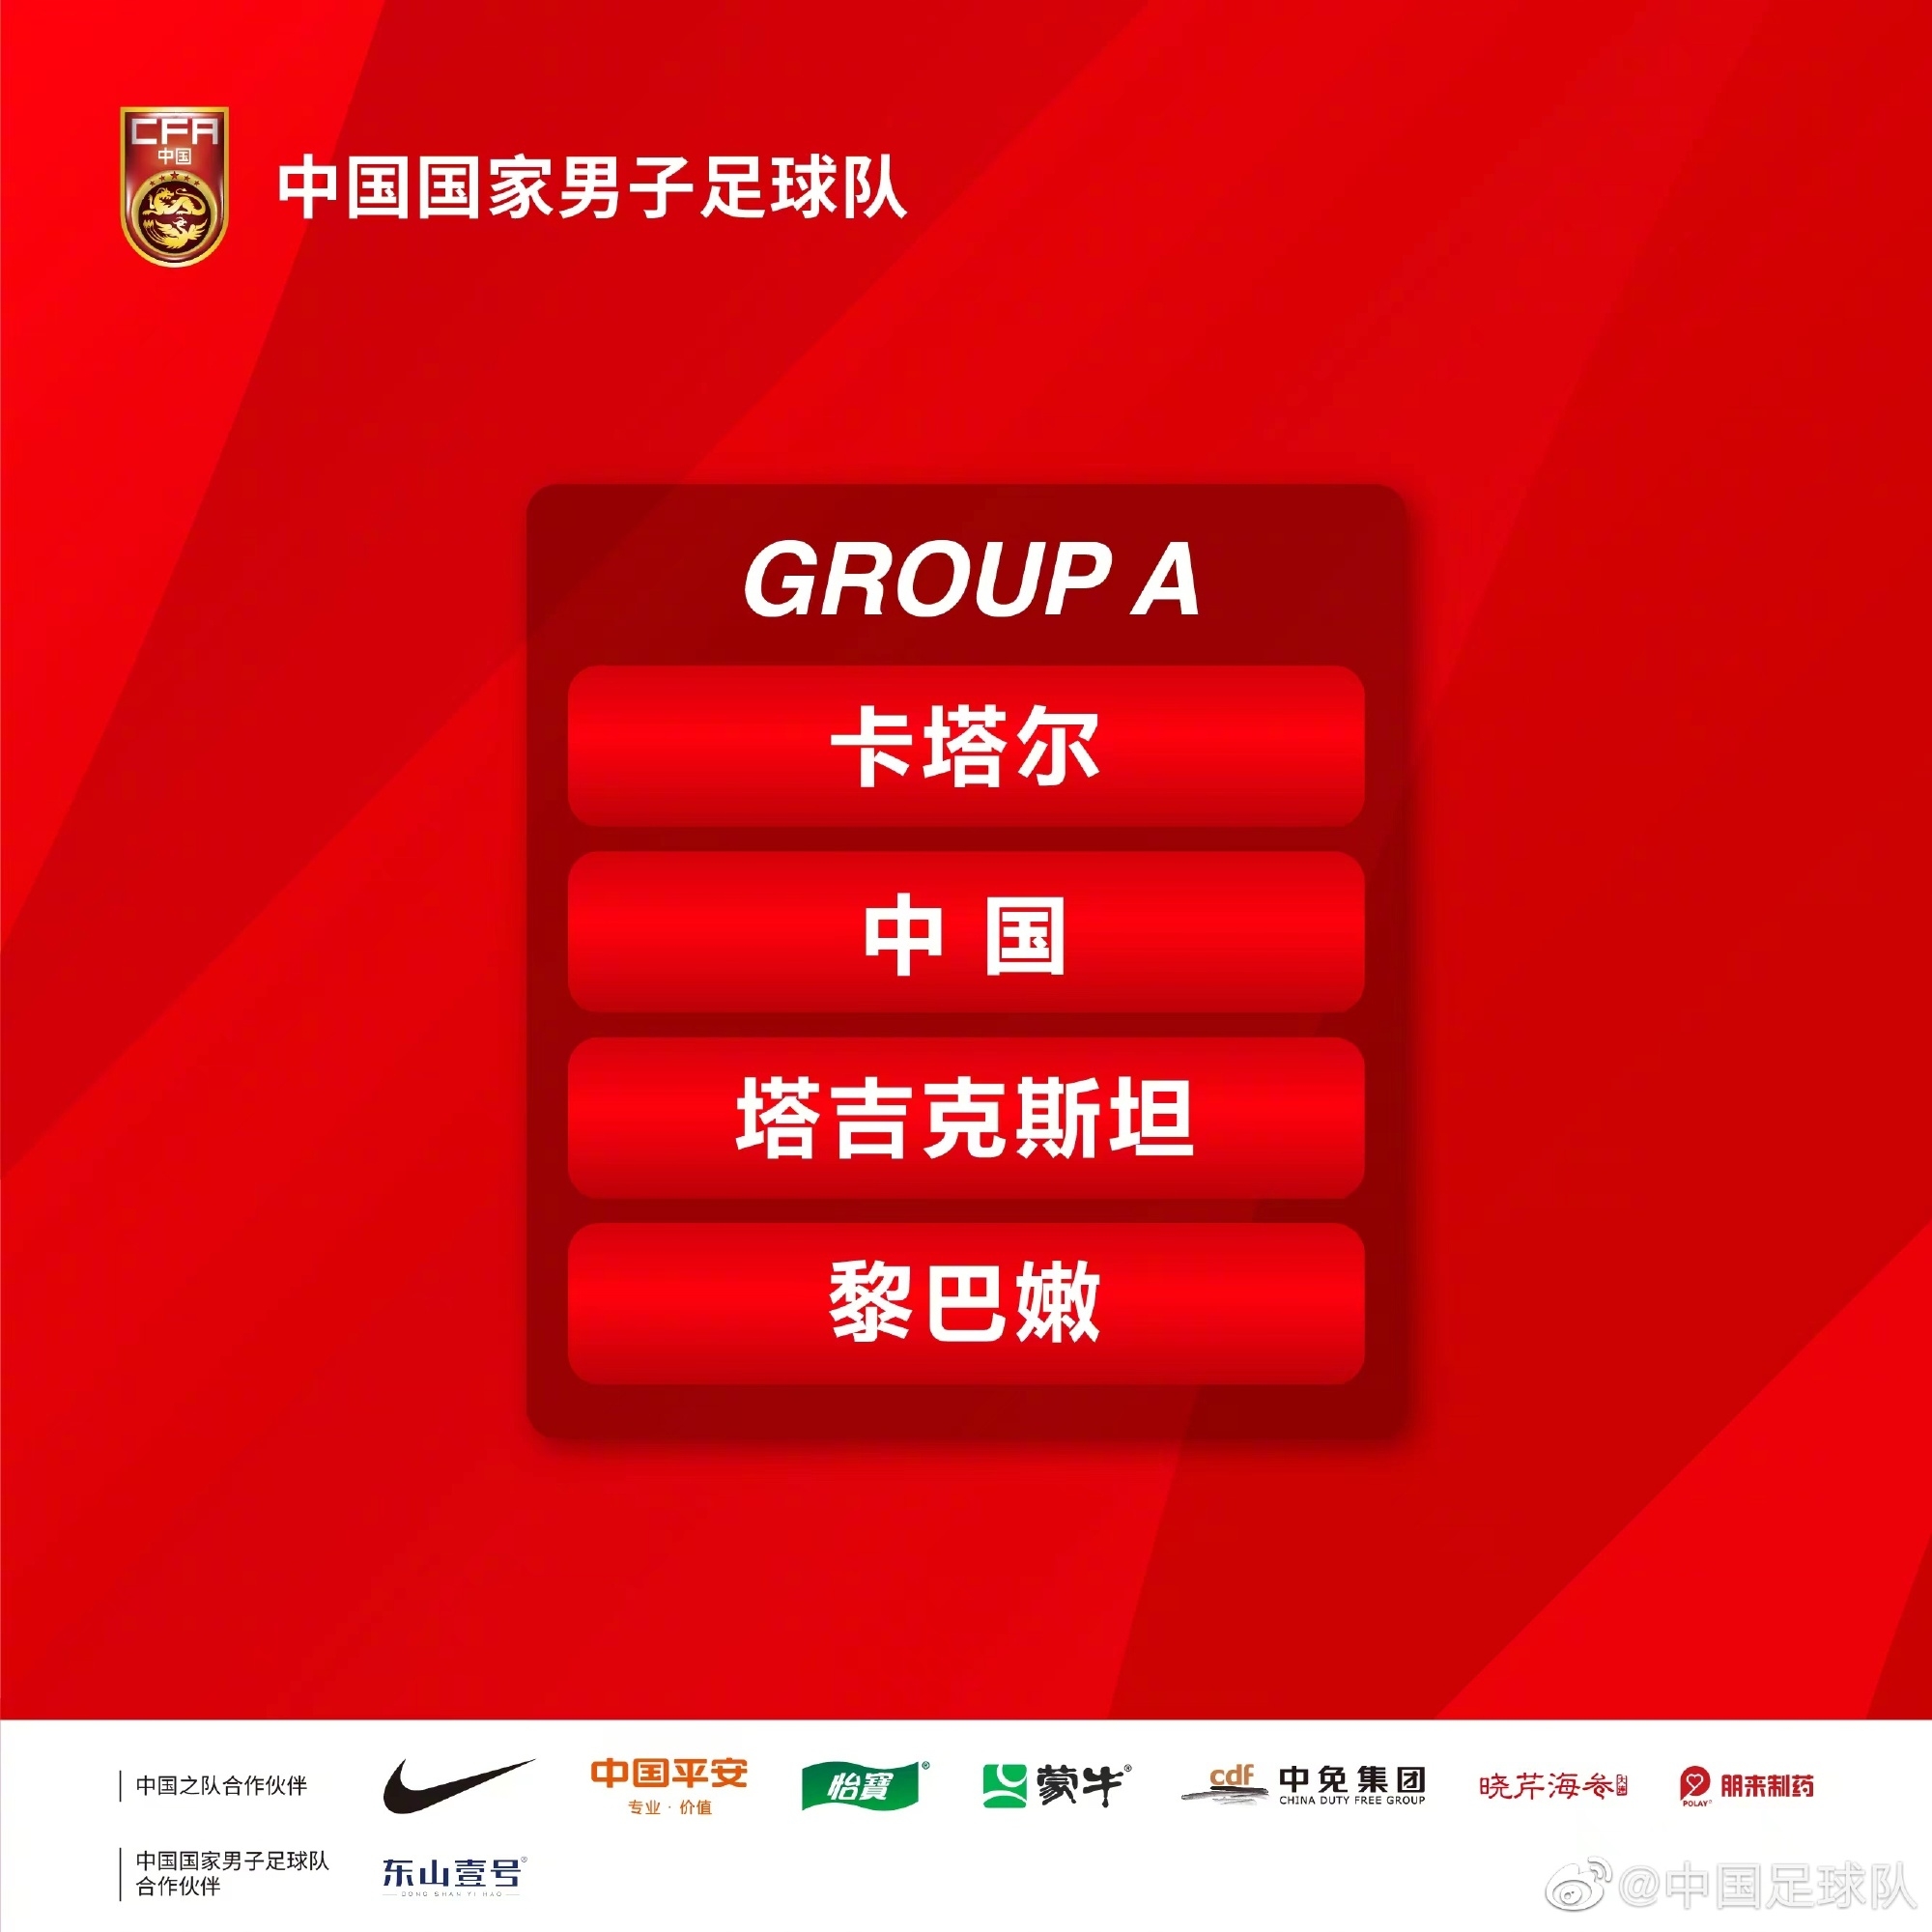 中国队被分入A组，同组对手有卡塔尔队、塔吉克斯坦队和黎巴嫩队-欧冠  image